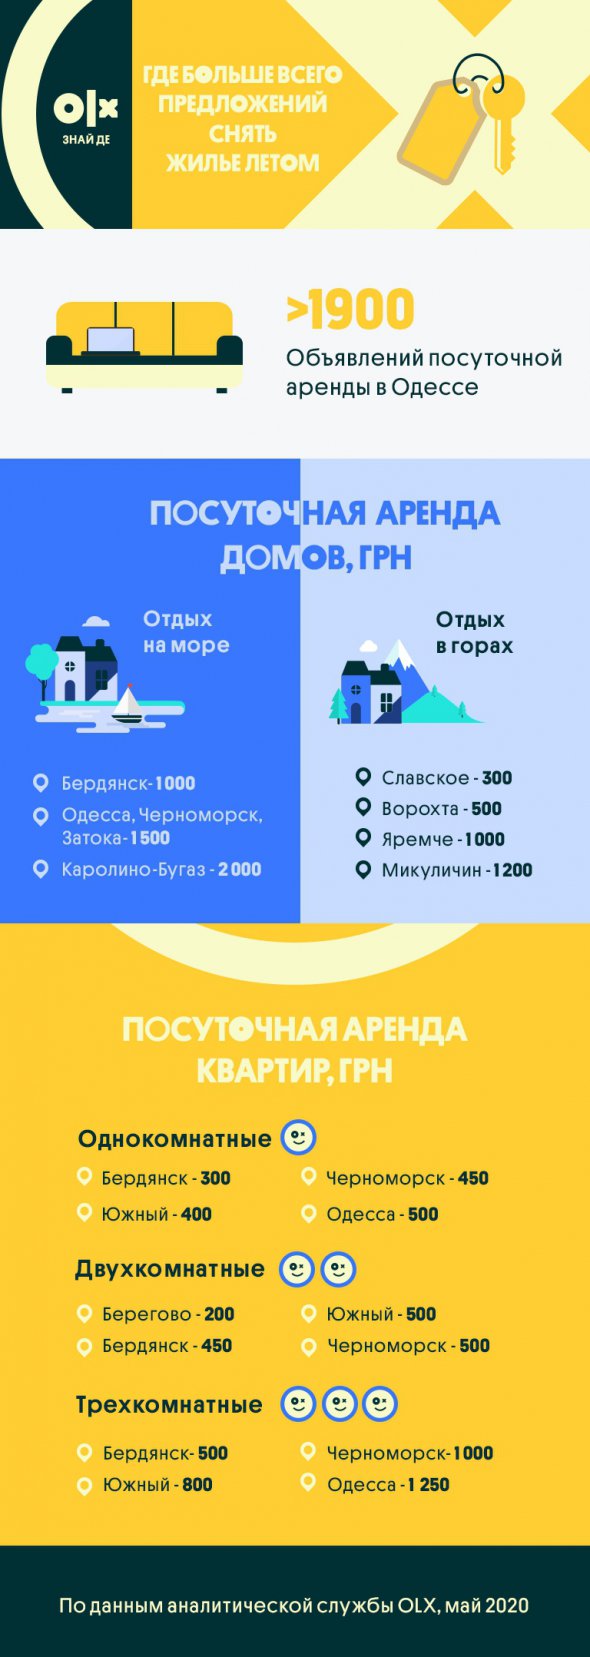 Дешевле всего арендовать дом в Славском или двушку в Берегово - 300 и 200 грн в сутки соответственно.